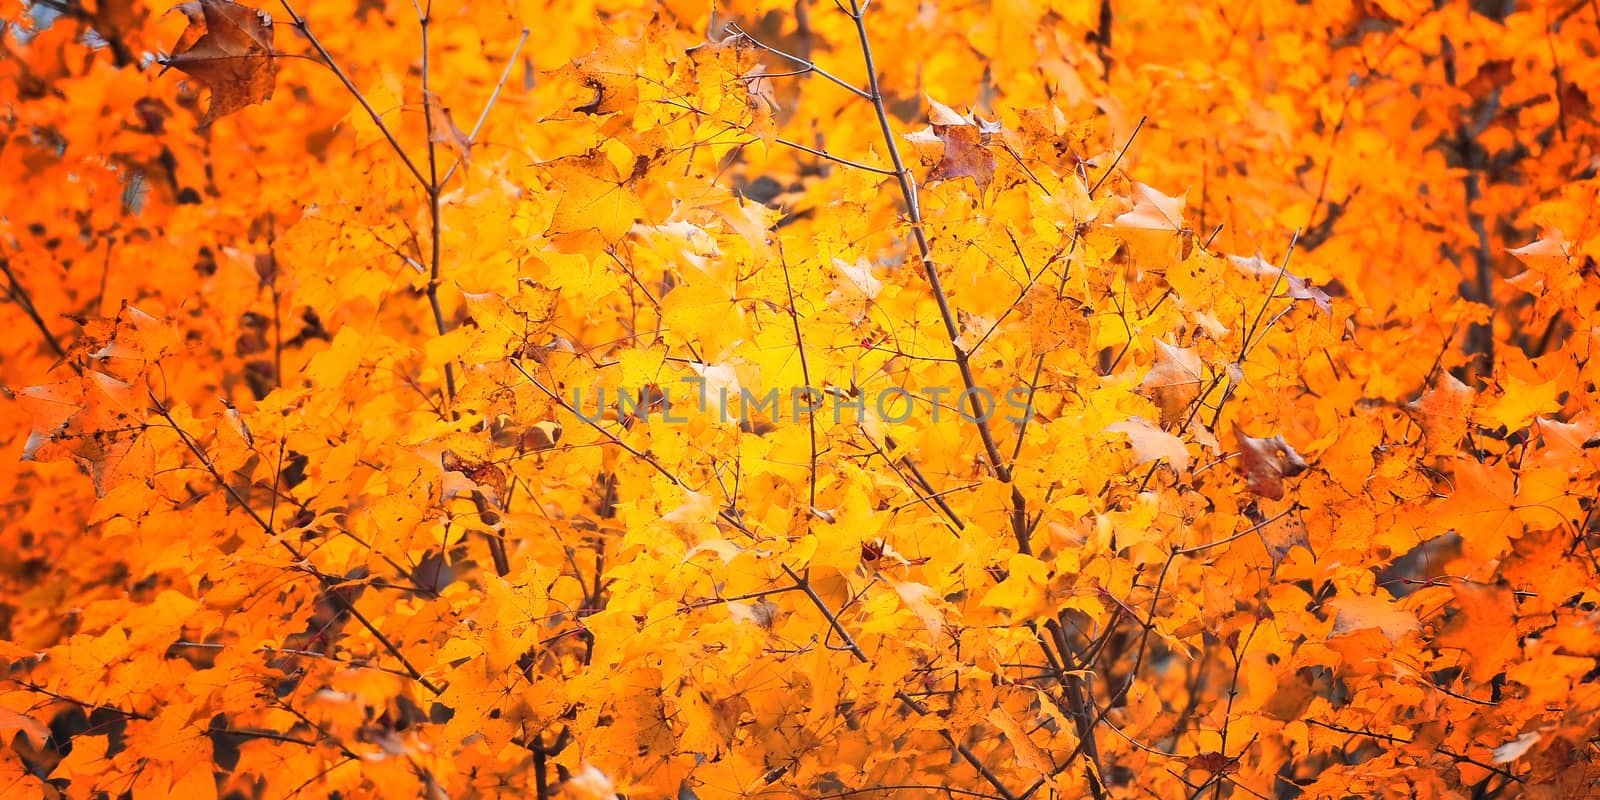 Golden leaves by Surasak